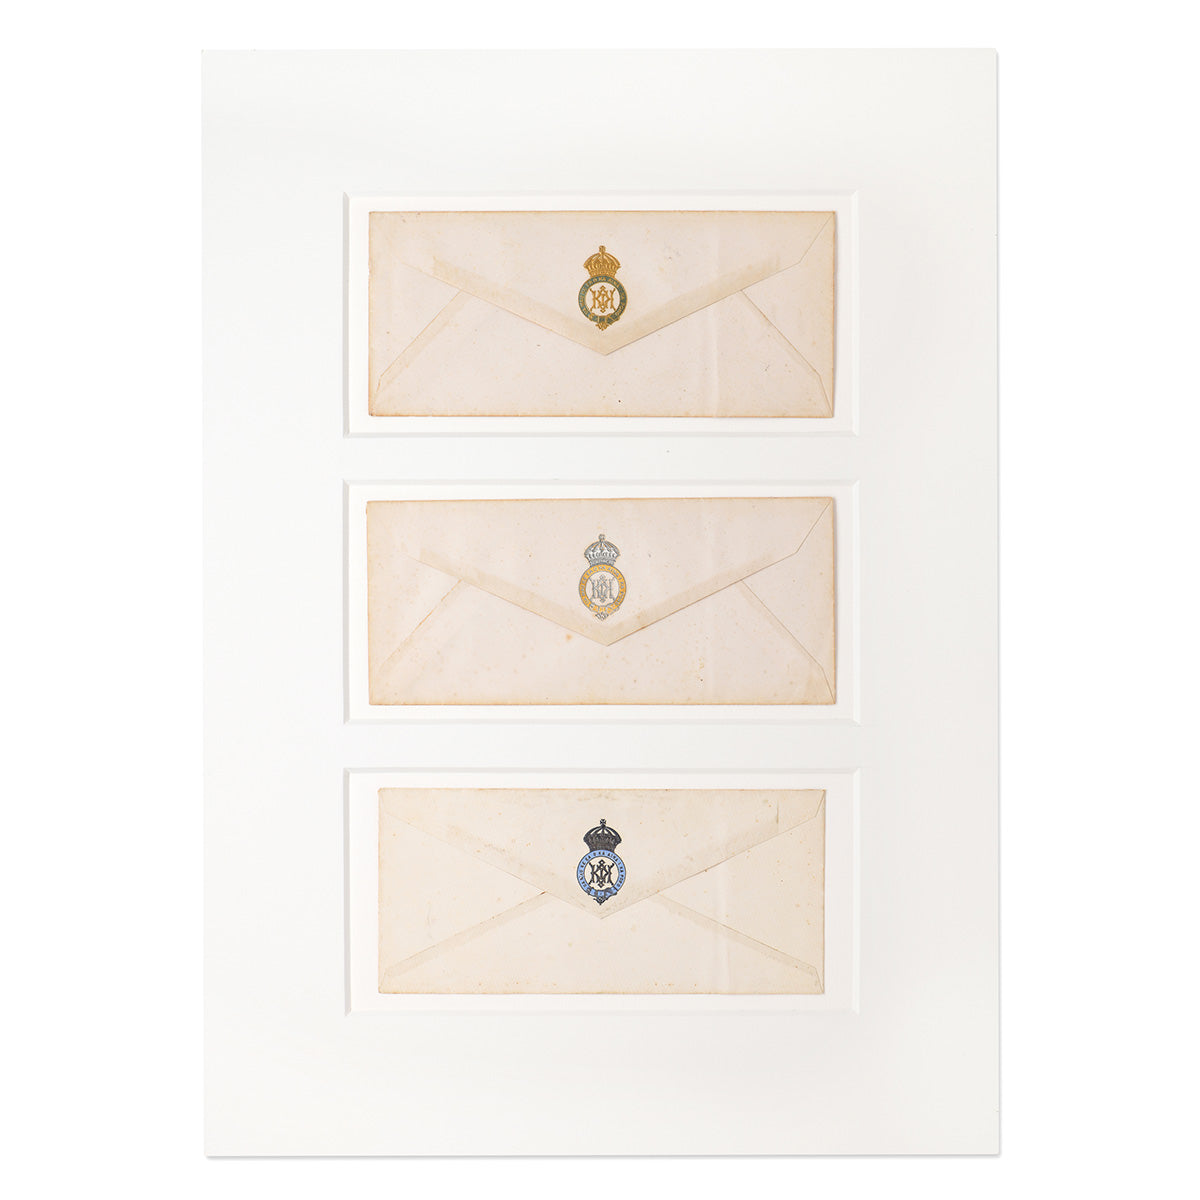 Three framed envelopes with historic Hawaiian insignias